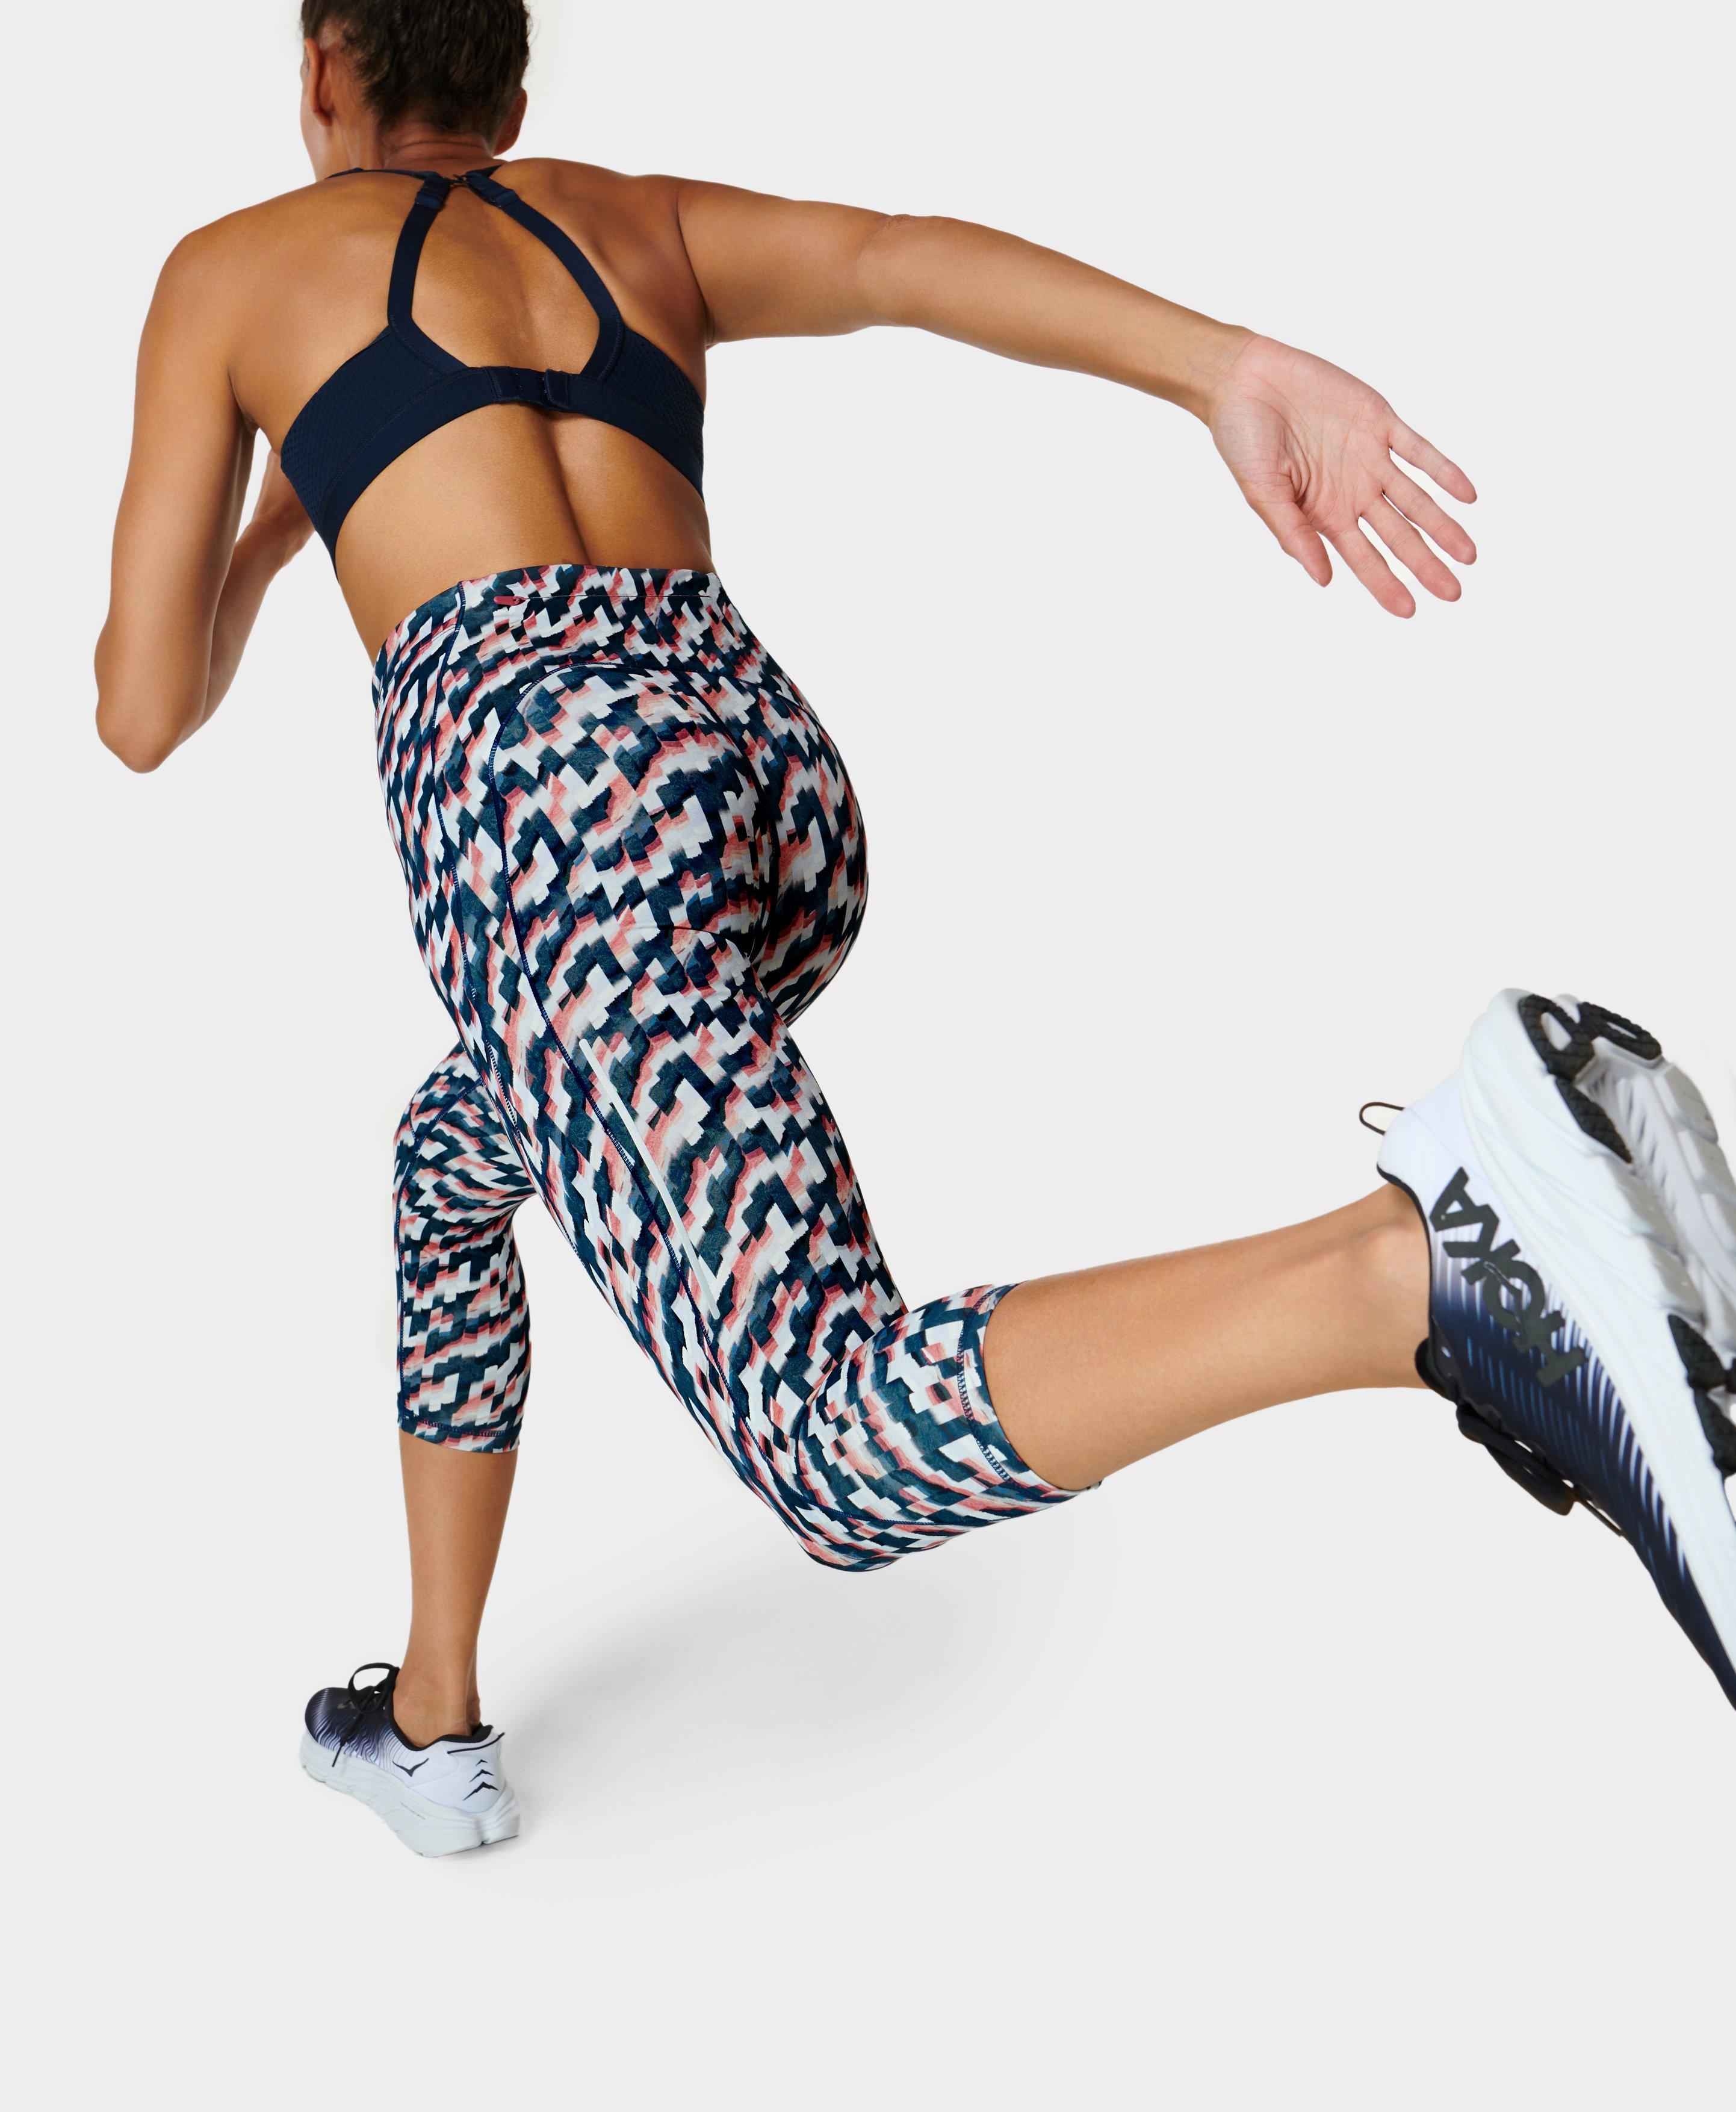 Pockets For Women - Sweaty Betty Rapid Run Cropped Leggings, Multi Colored,  Women's